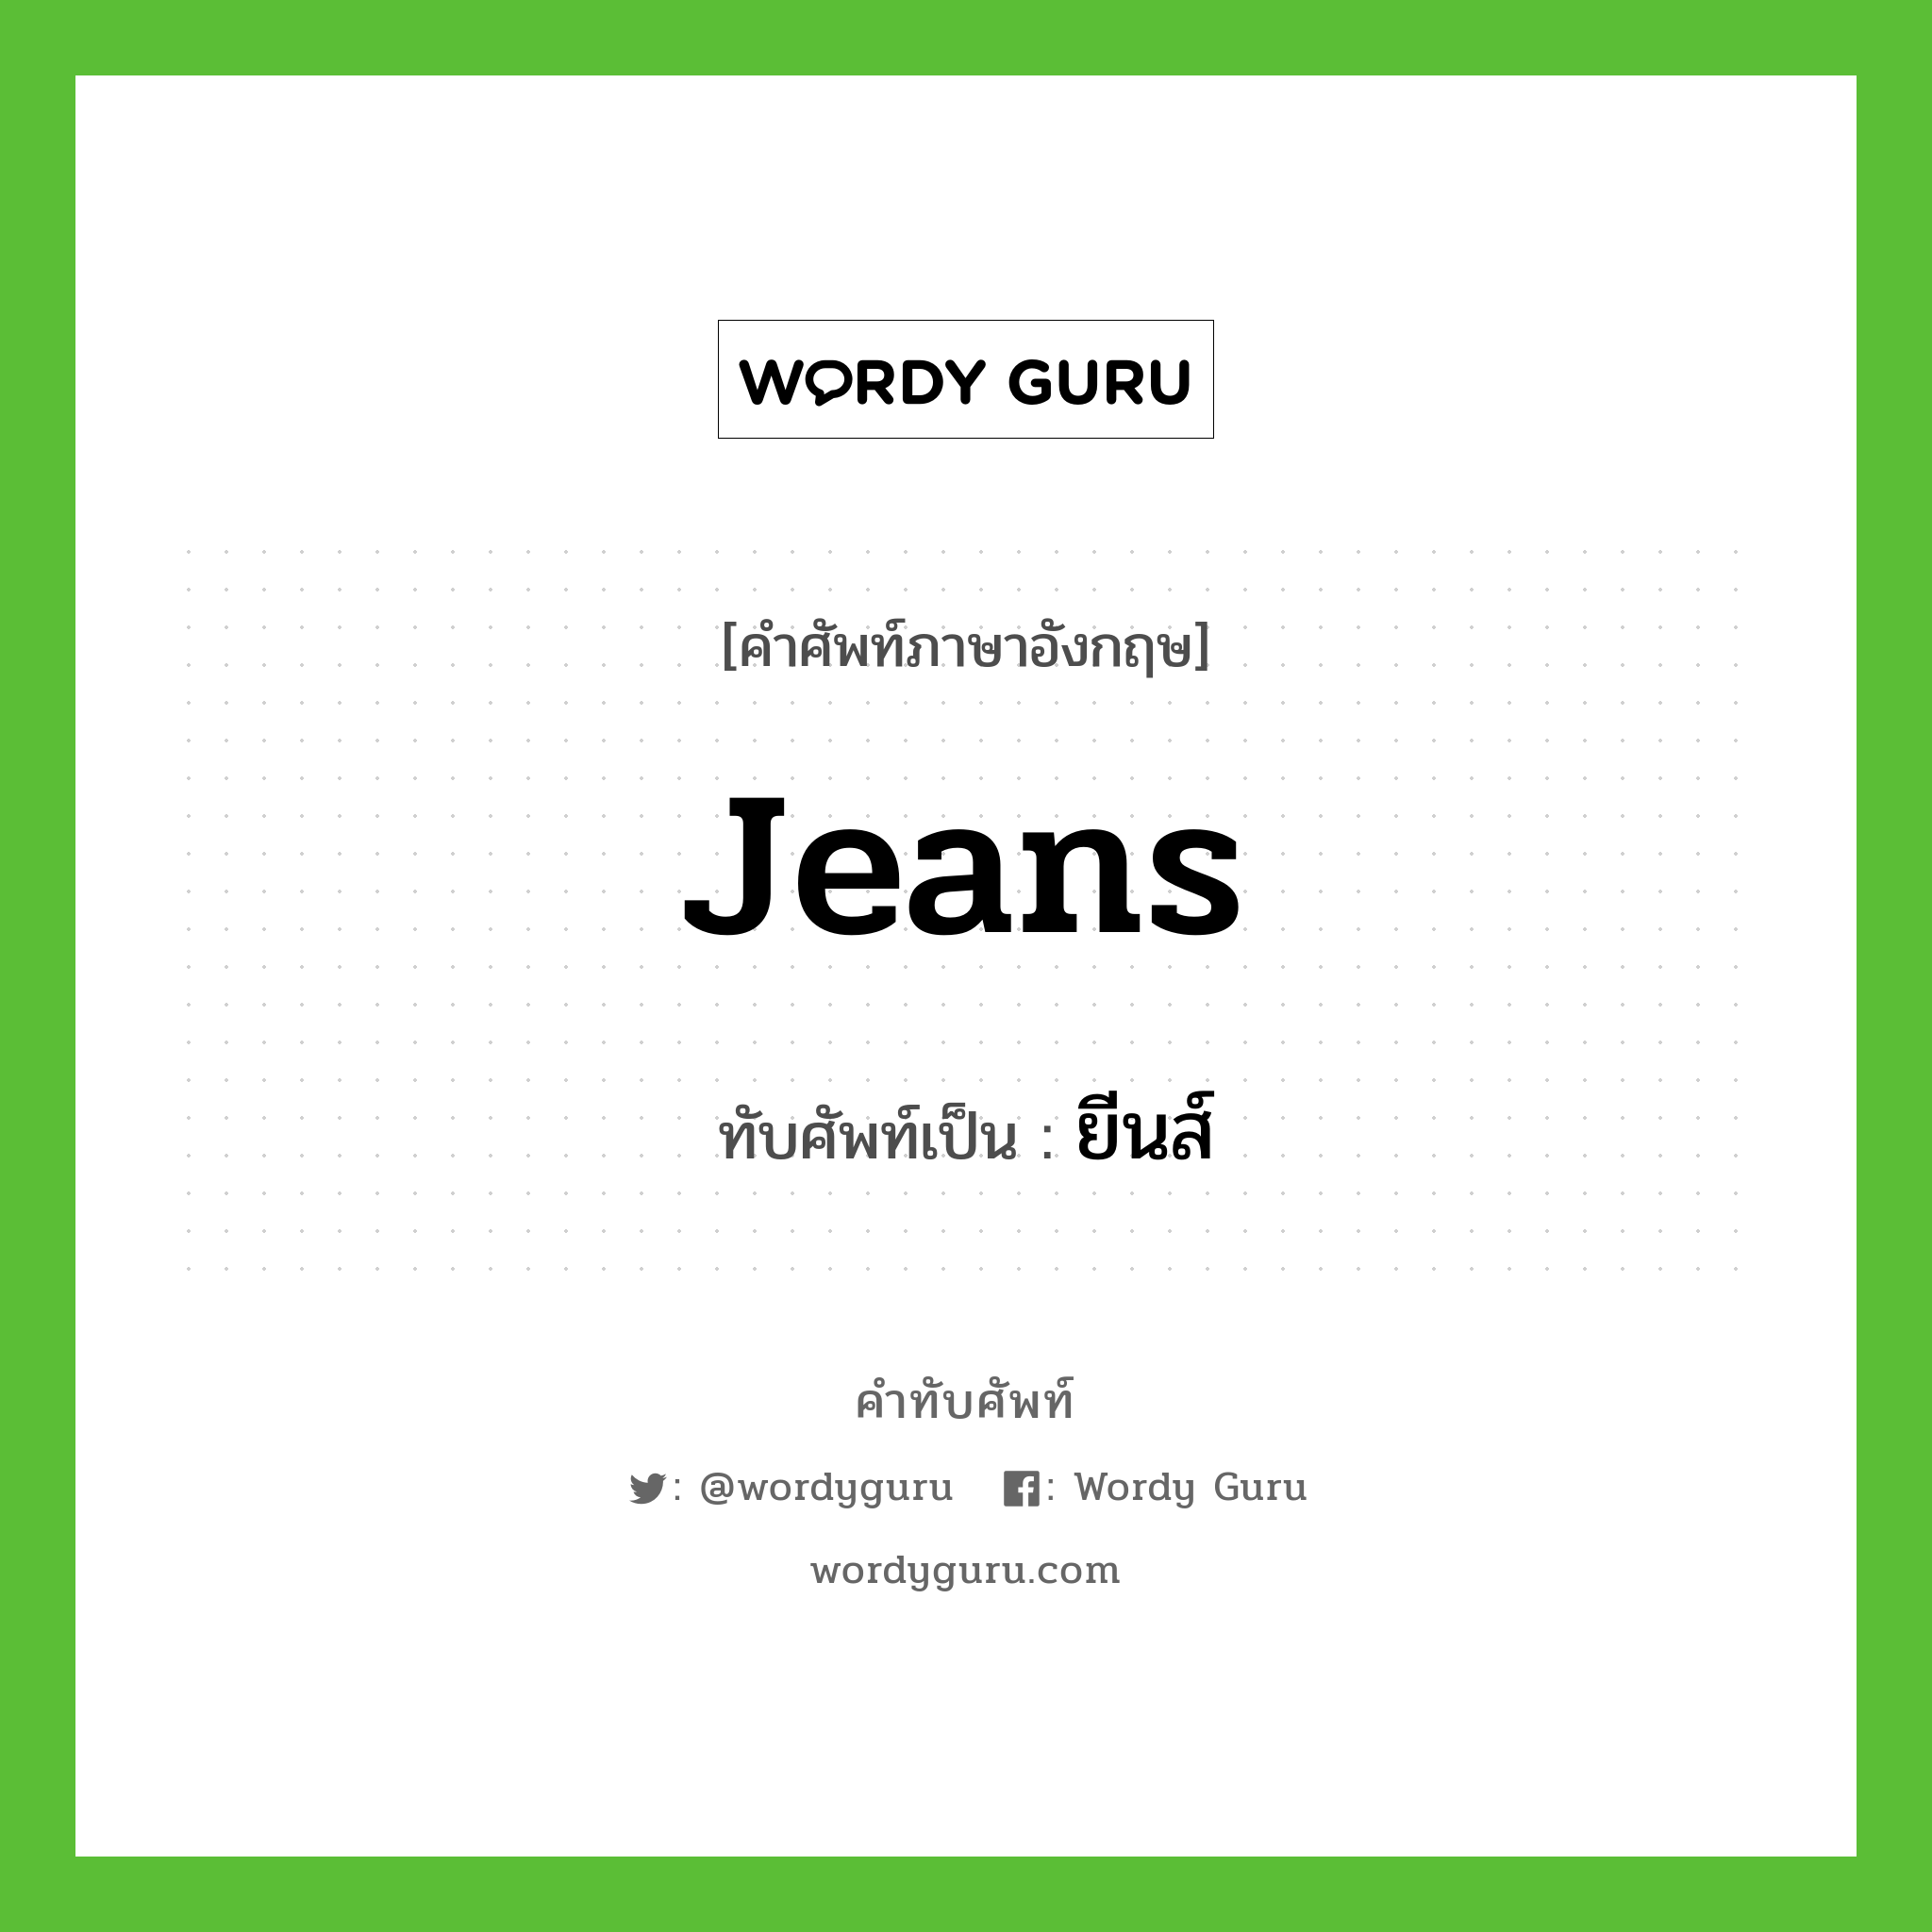 jeans เขียนเป็นคำไทยว่าอะไร?, คำศัพท์ภาษาอังกฤษ jeans ทับศัพท์เป็น ยีนส์